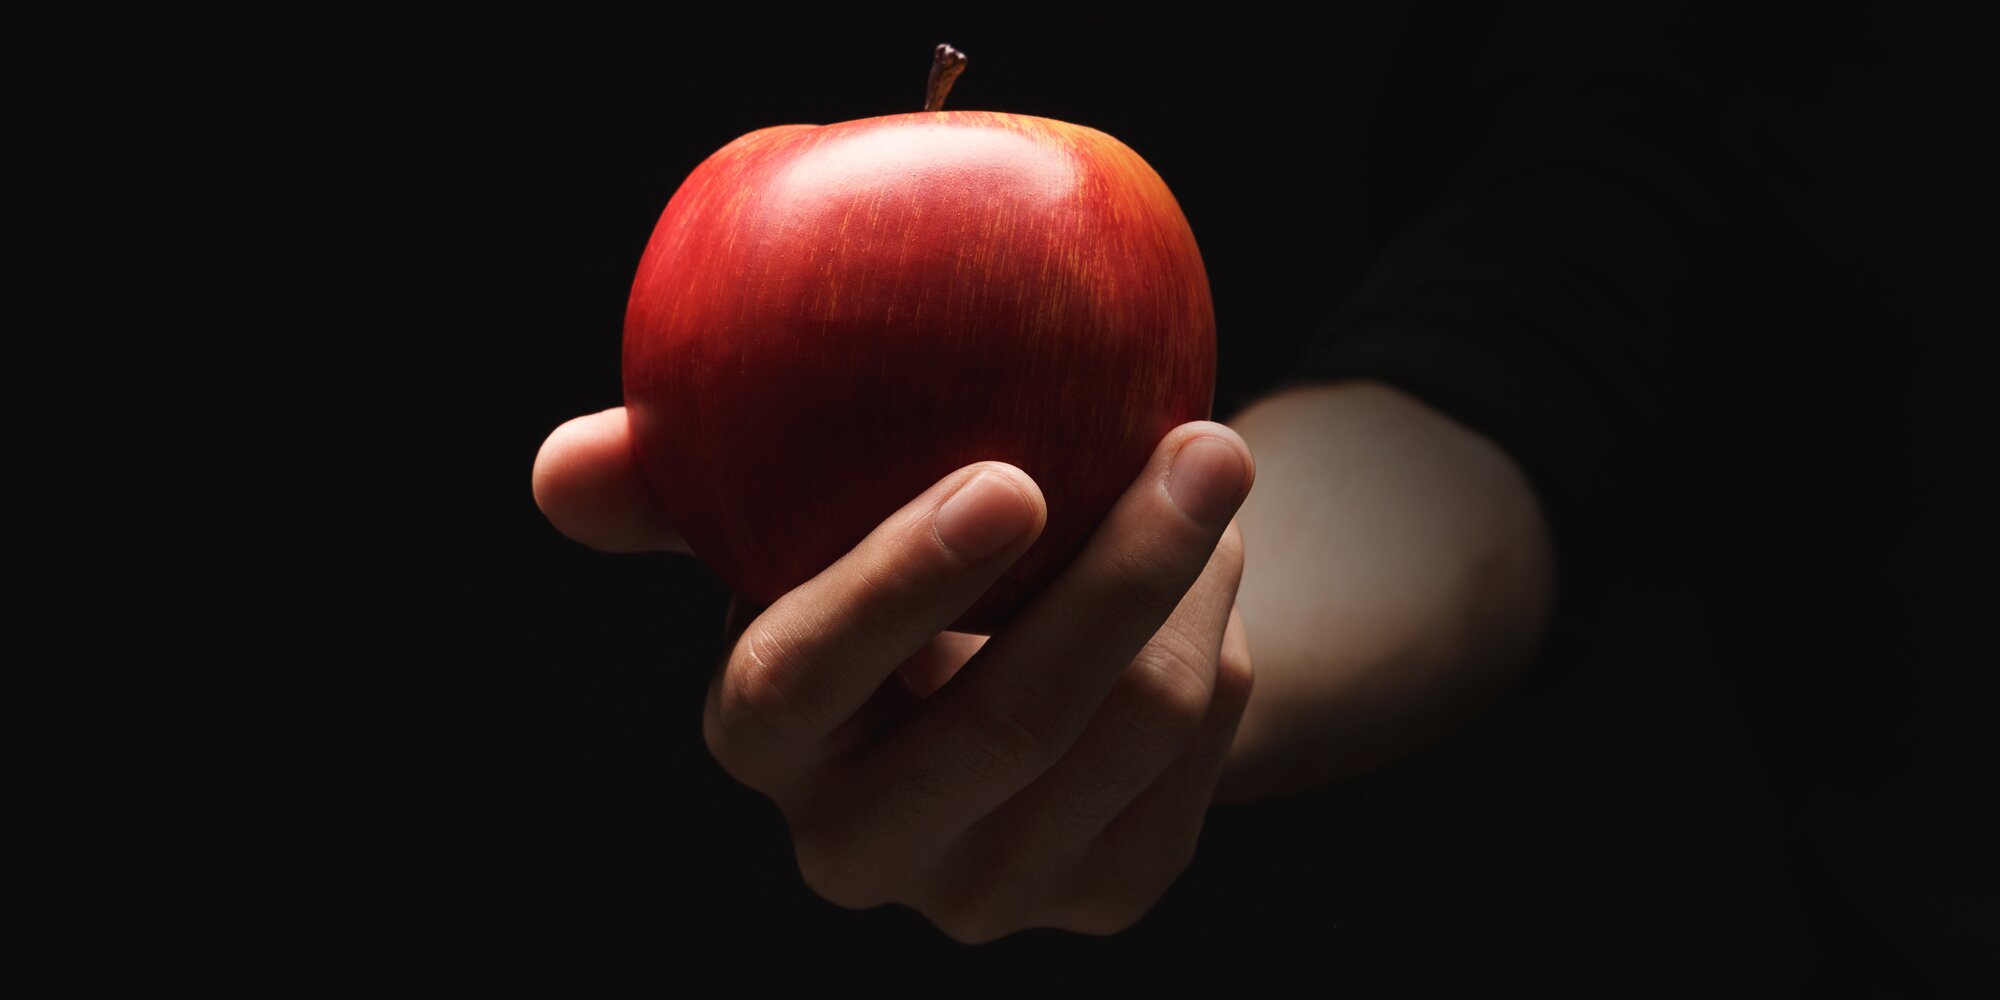 Кинуть яблоко. Яблоко в руке. Яблоко на черном фоне. Яблоко на темном фоне. Яблоко в руке на темном фоне.